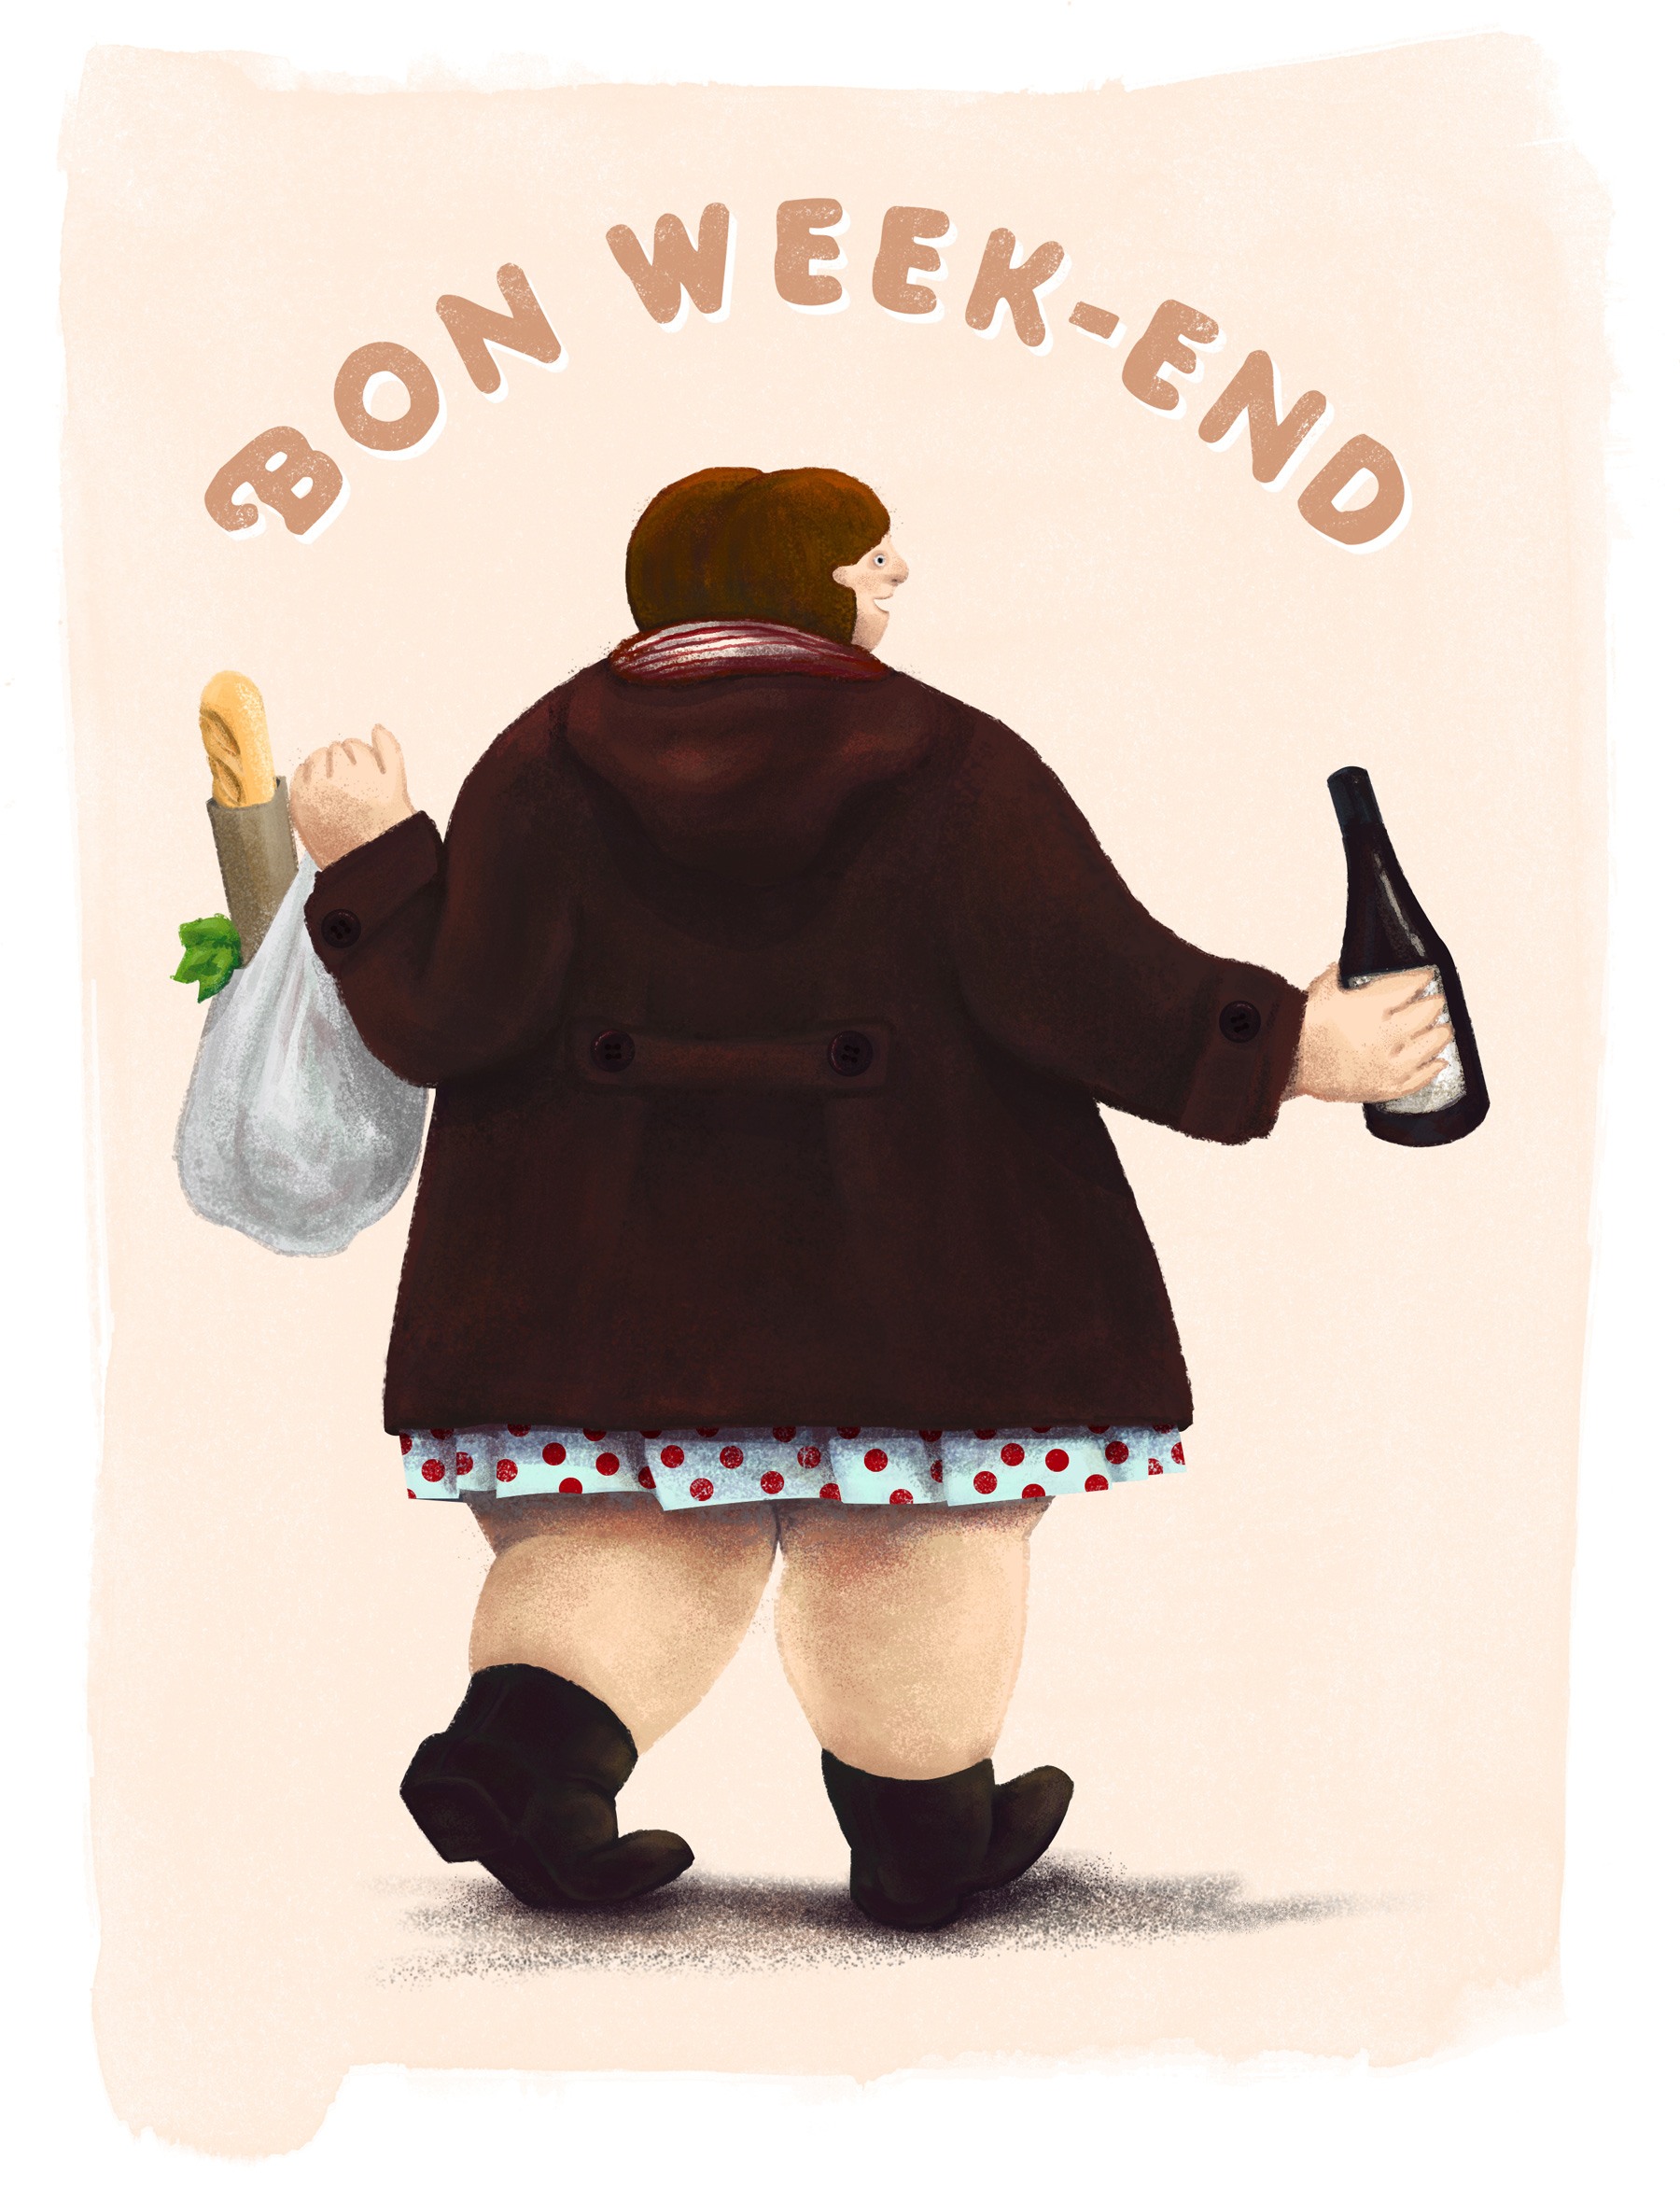 Bon week-end illustration